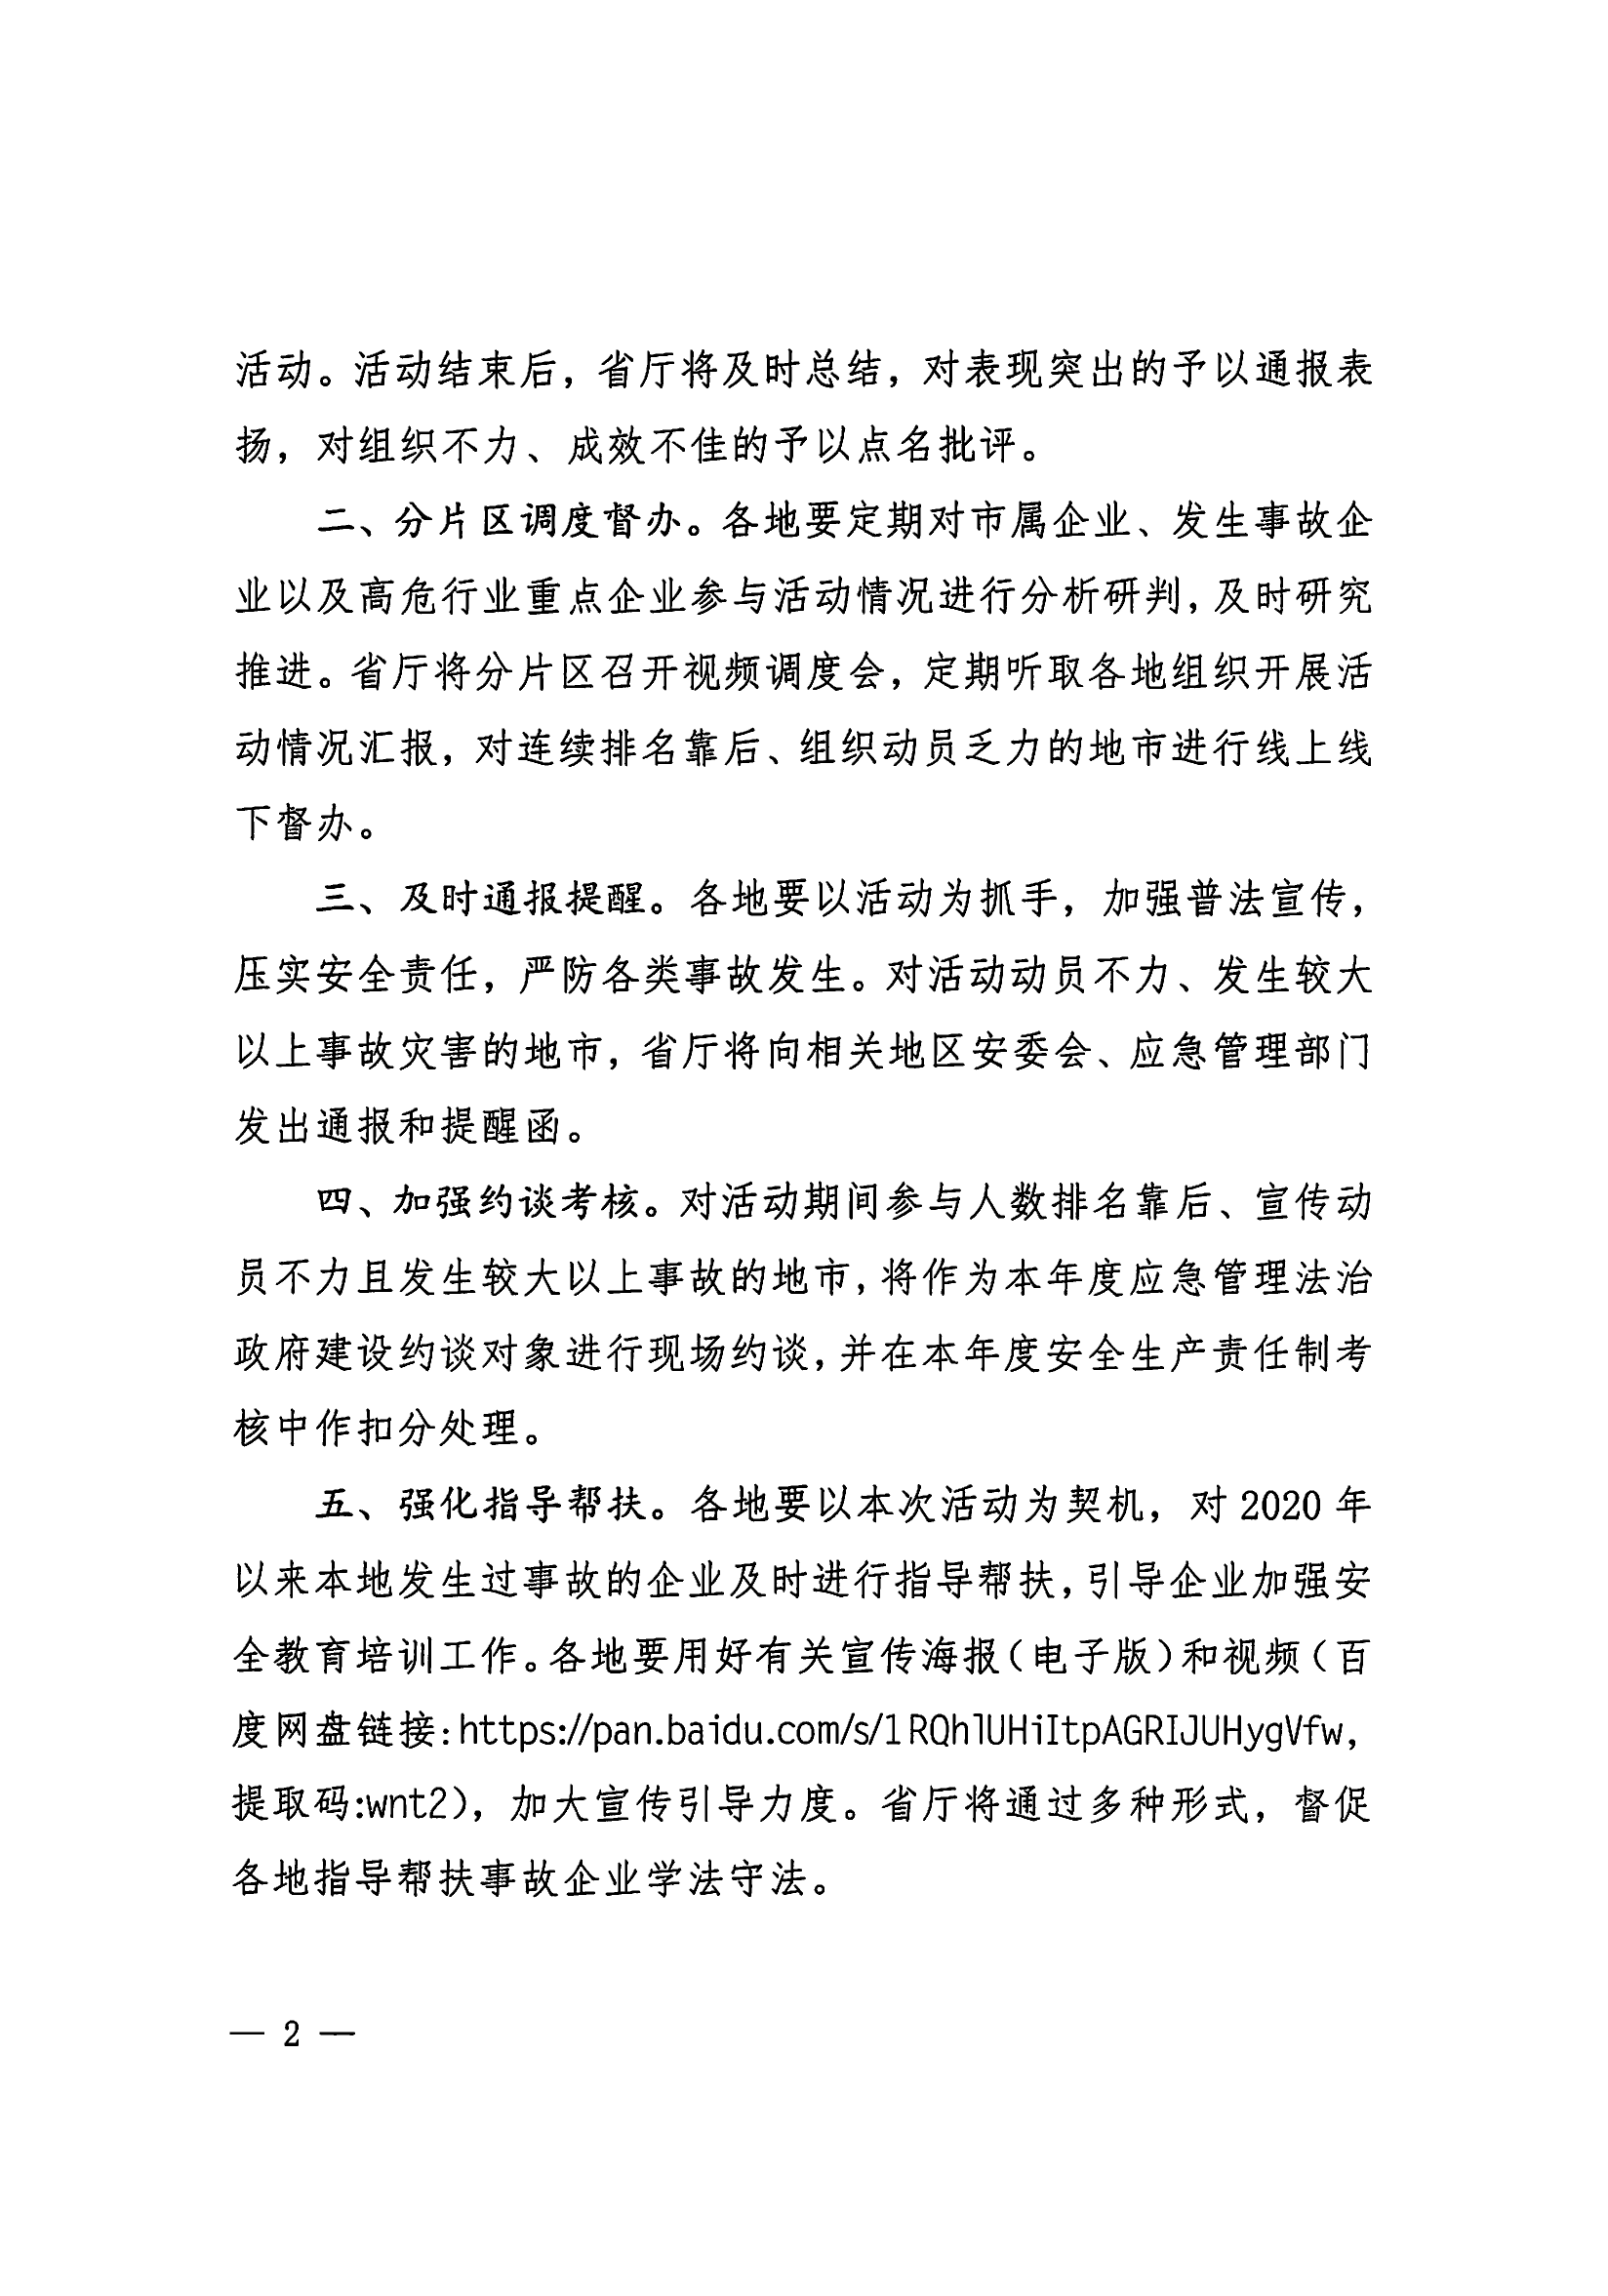 惠州市安全生产委员会办公室转发关于进一步组织开展好广东应急普法“线上马拉松”活动的通知_03.png